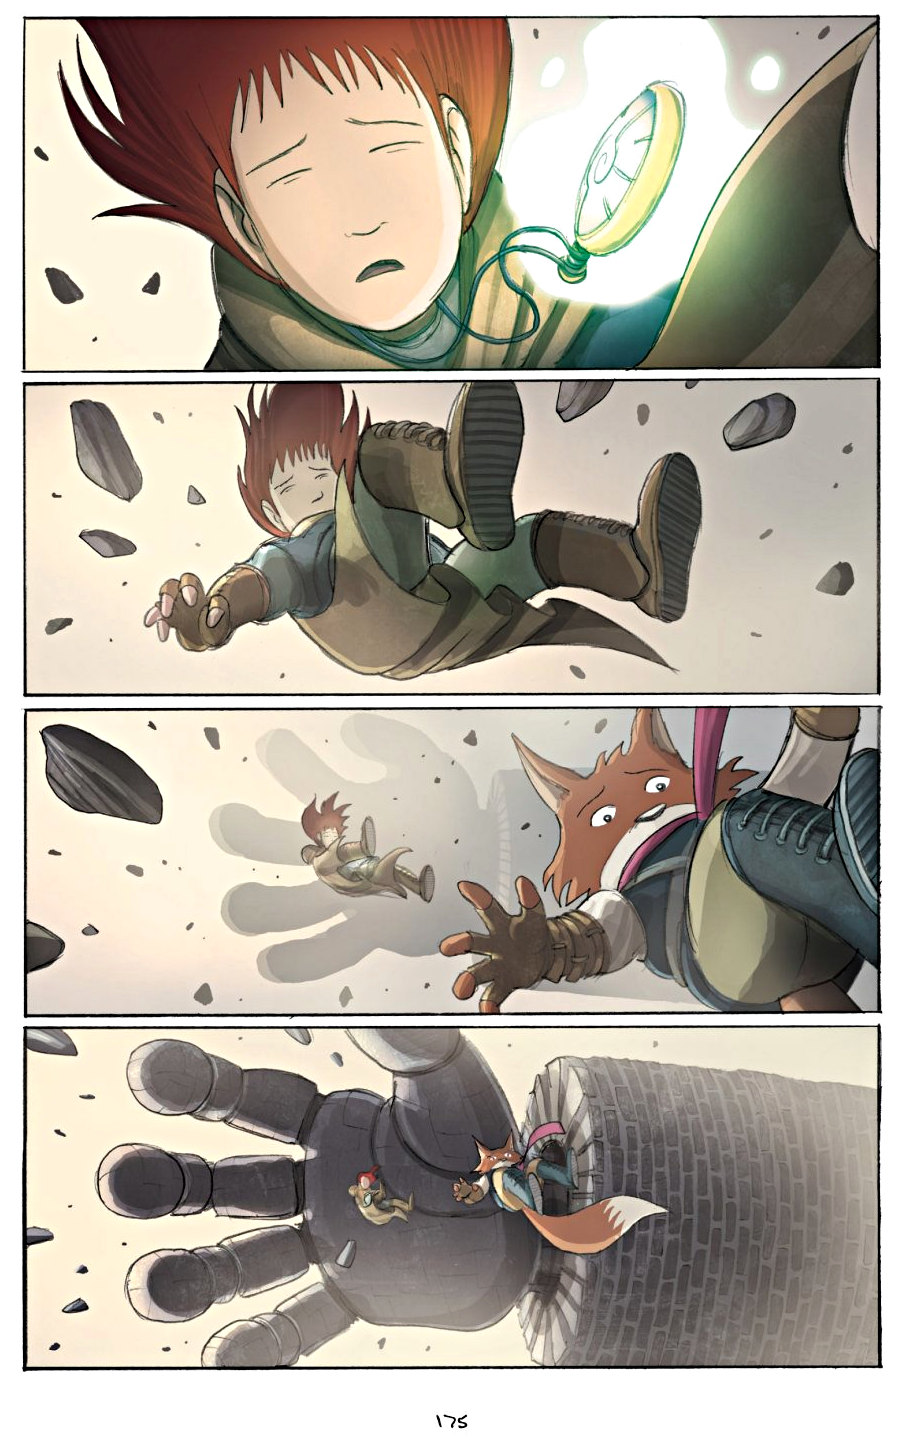 page 175 of amulet 2 stonekeeper's curse graphic novel by kazu kibuishi